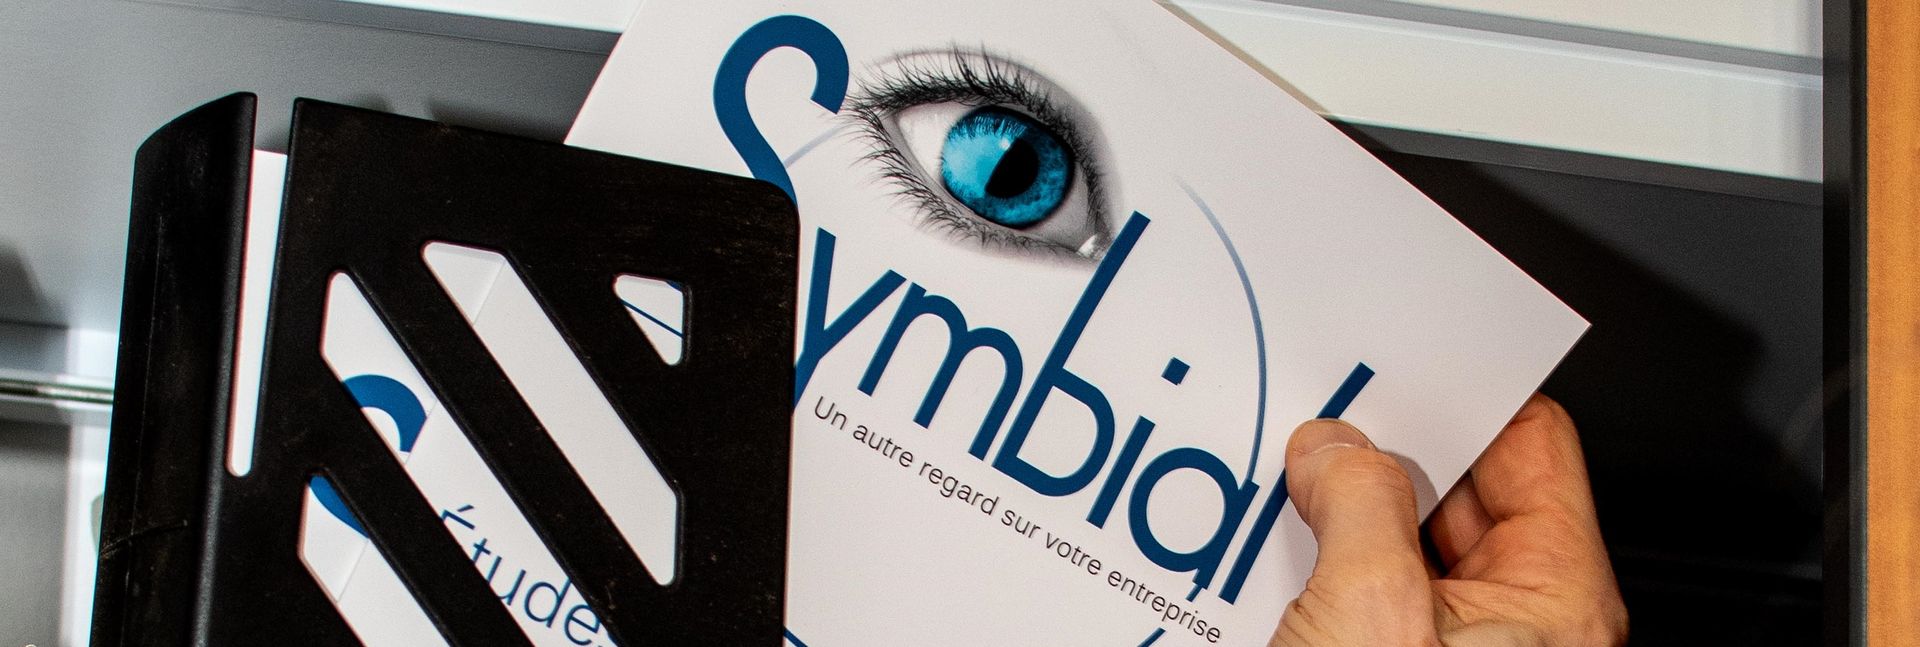 Affiche de l'entreprise Symbial